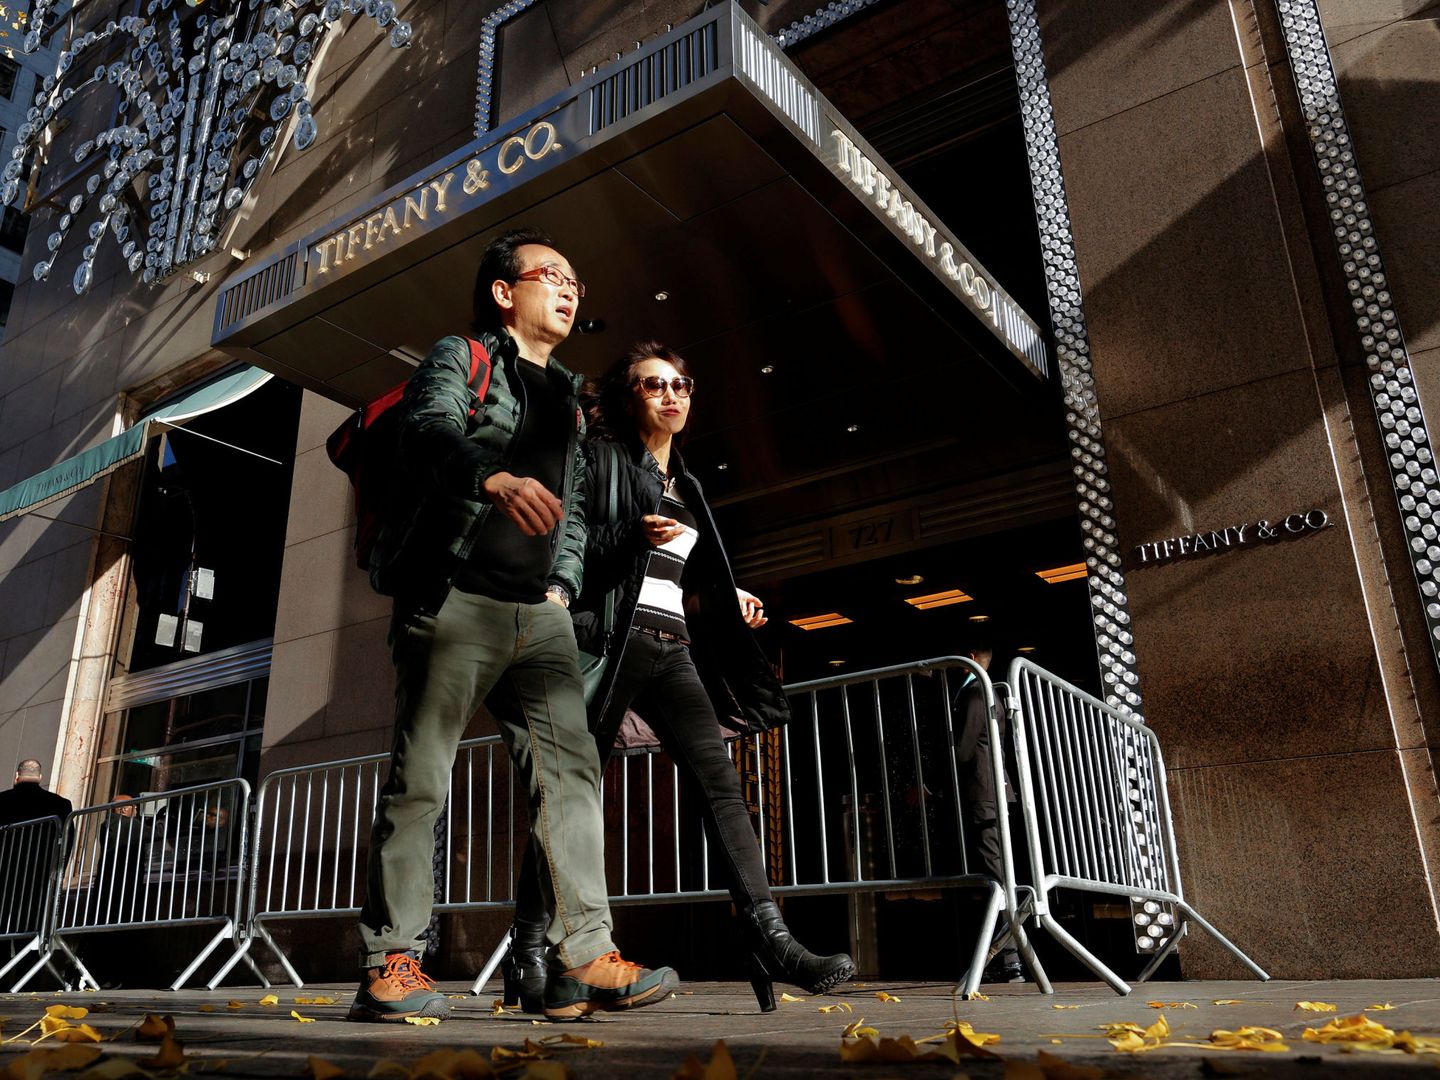 Dos peatones pasan por delante de la sede de Tiffany's en la Torre Trump, cuya entrada está bloqueada. (Reuters)